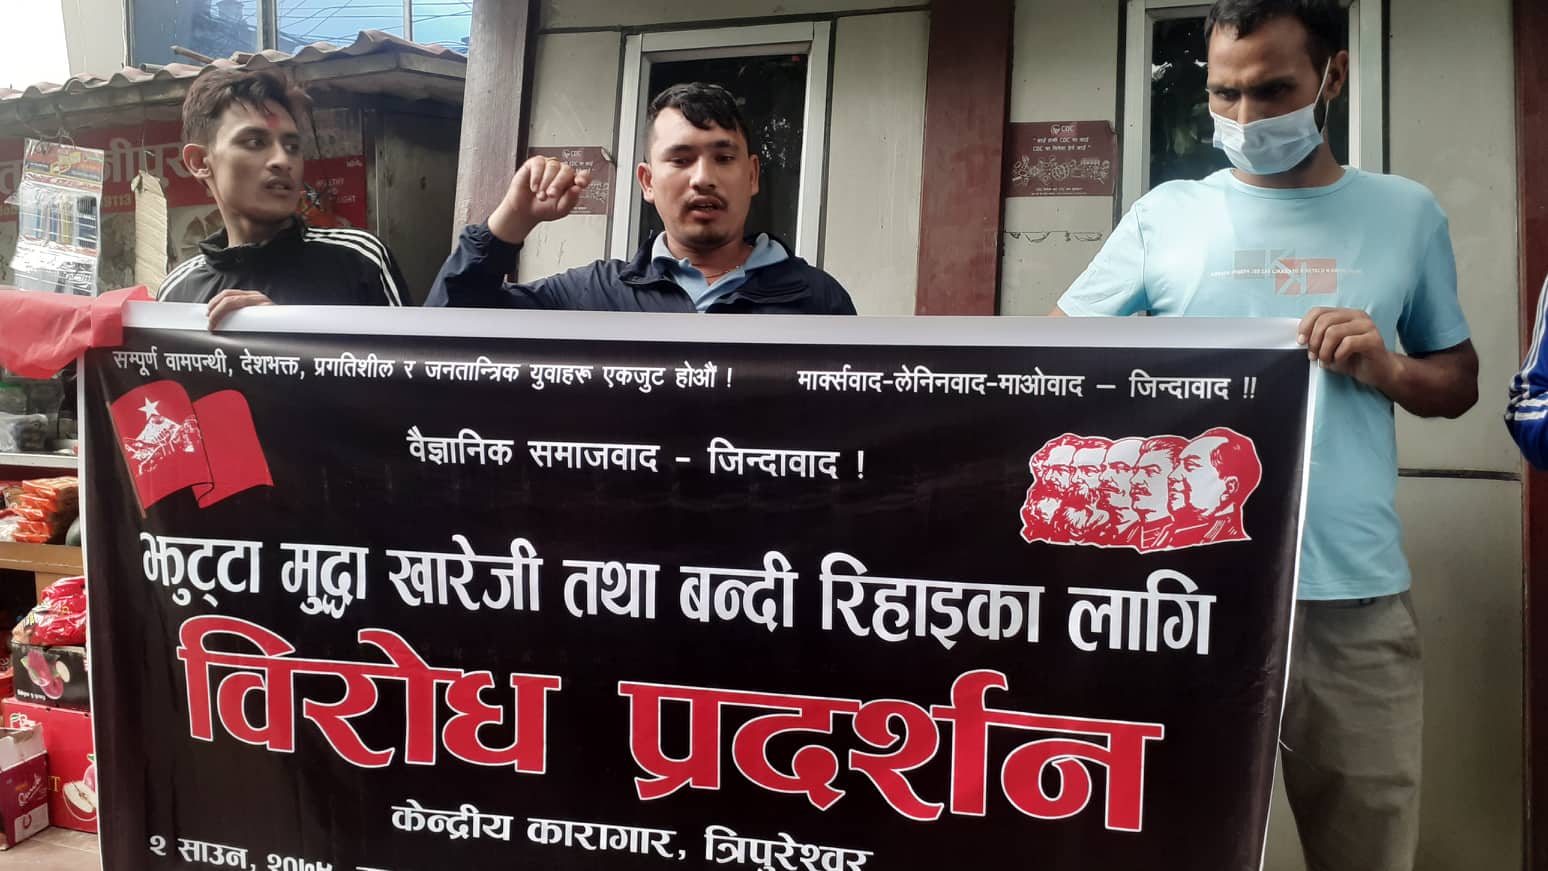 आस्थाका बन्दी रिहा गर्न माग गर्दै युवा जनस्वयम्सेवक नेपालद्वारा देशभरका कारागारबाहिर प्रदर्शन